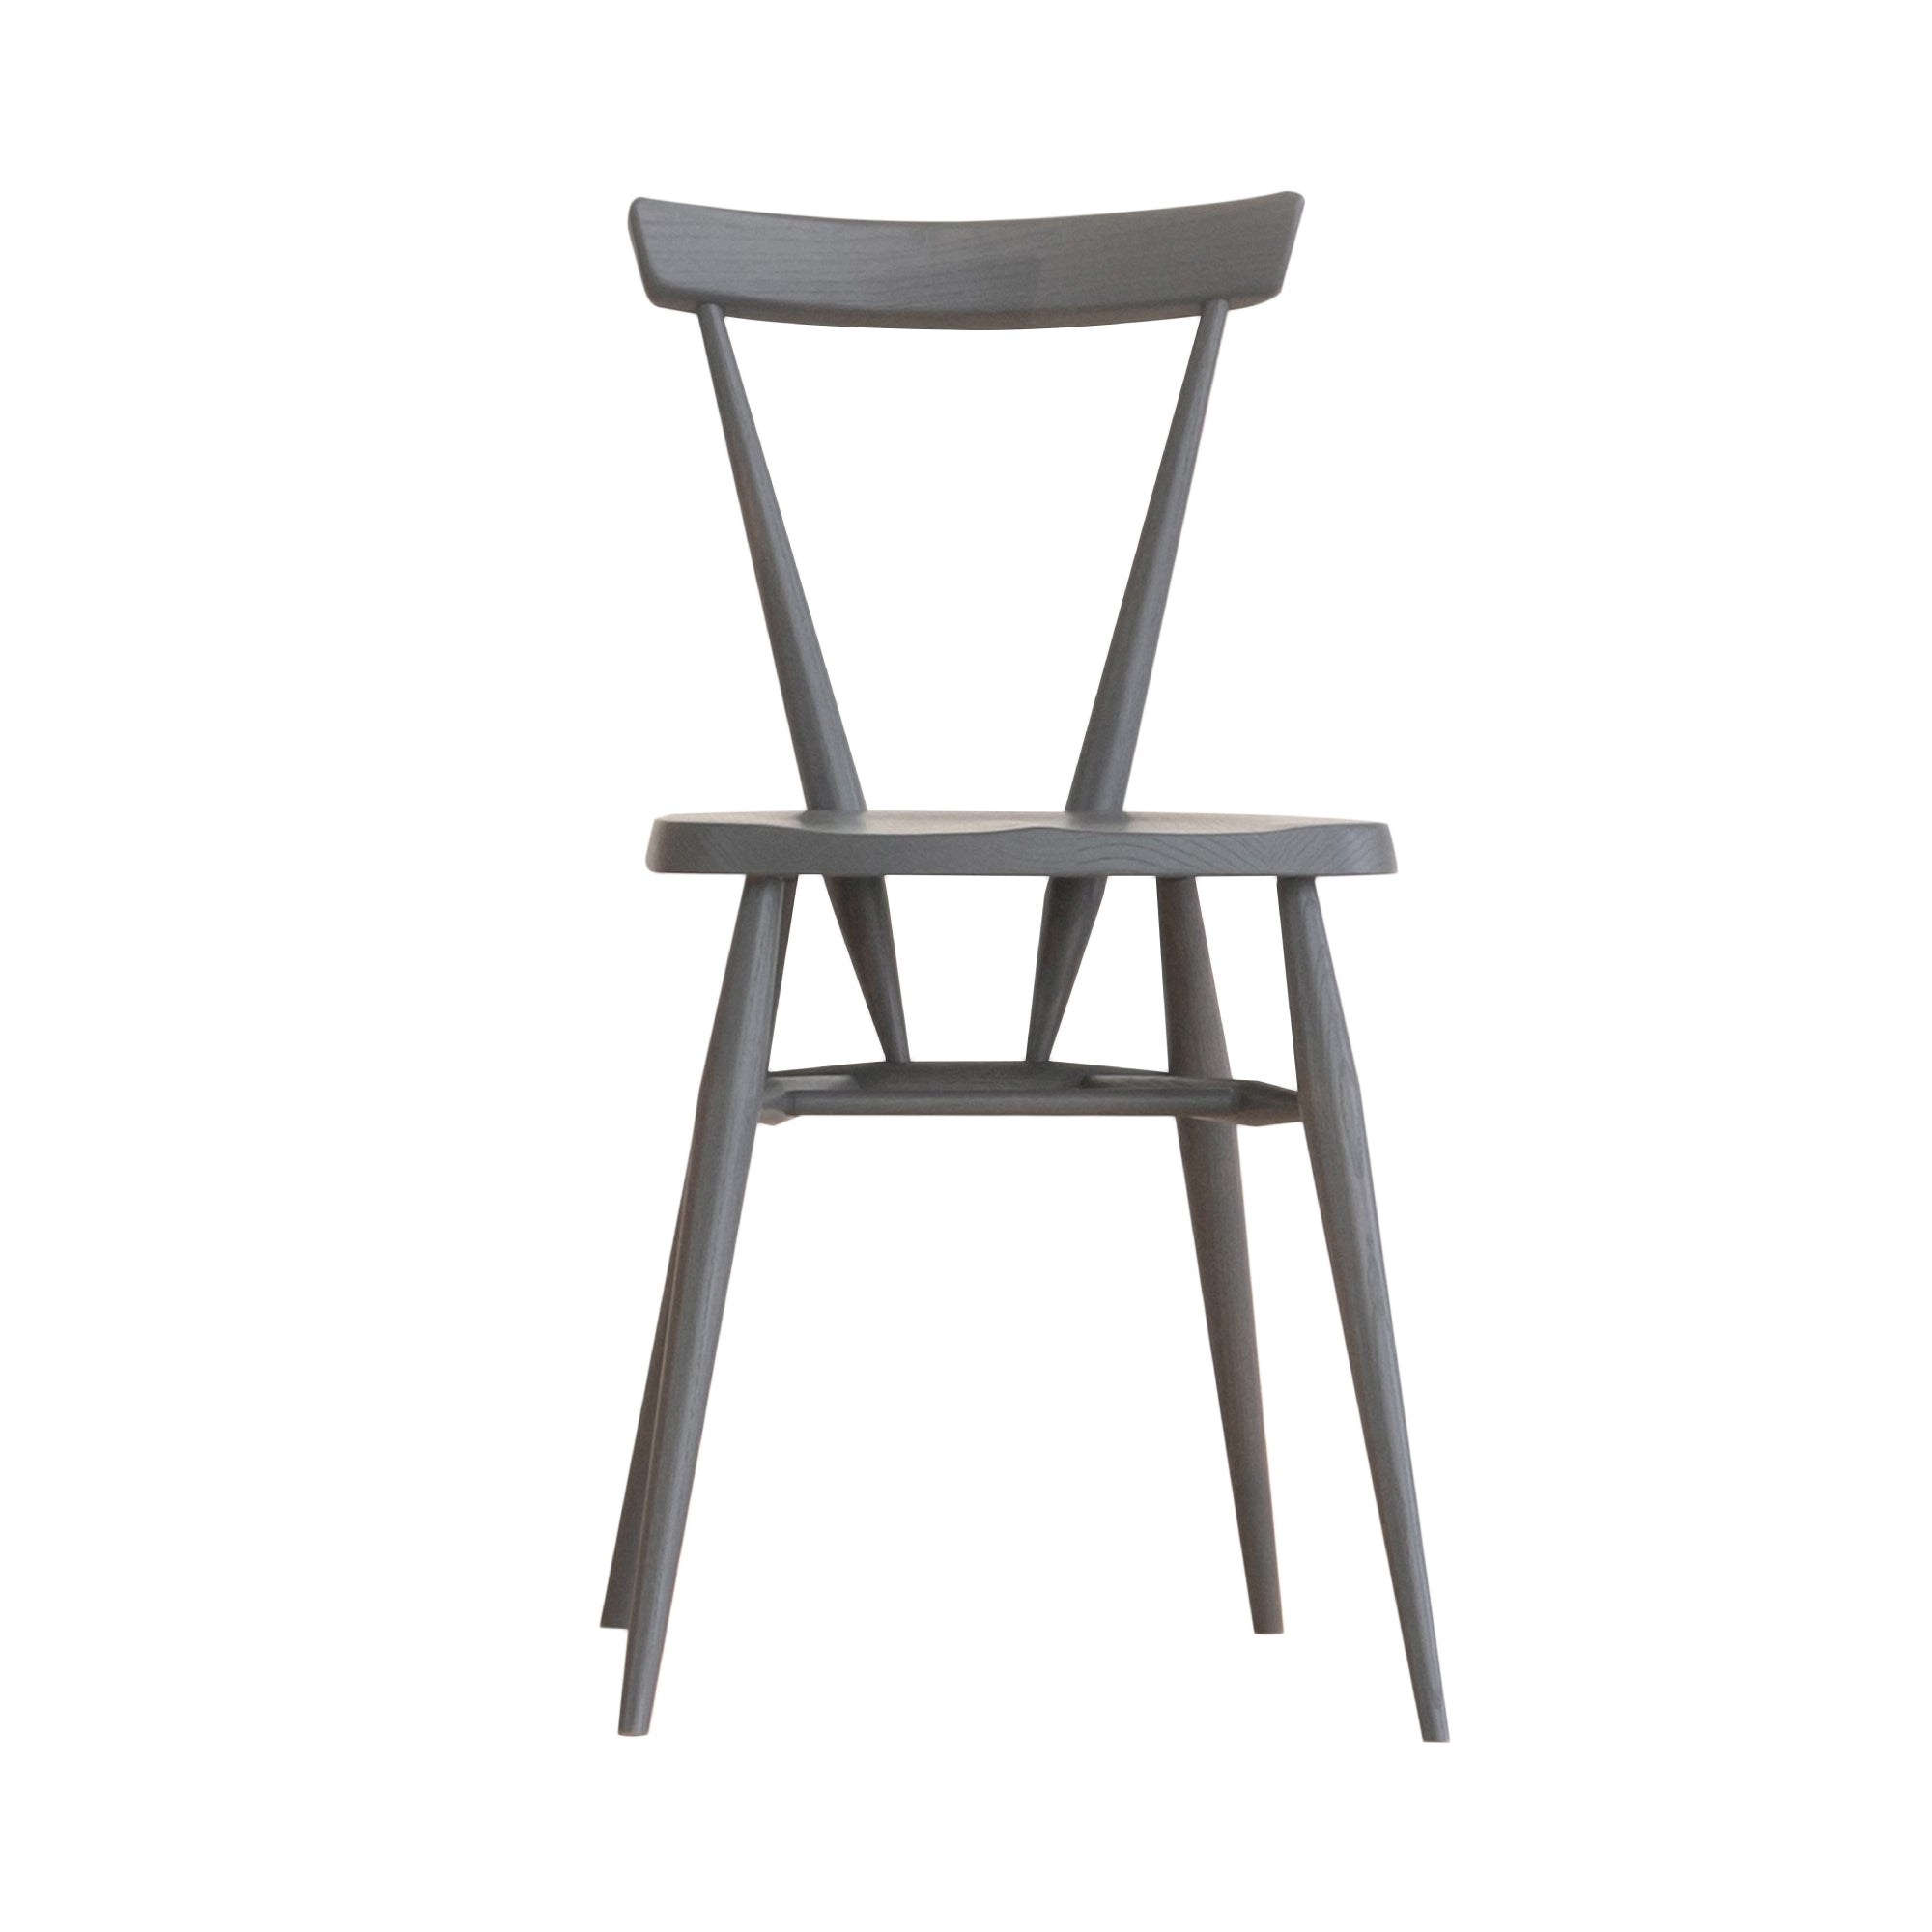 Originals Stacking Chair: Warm Grey